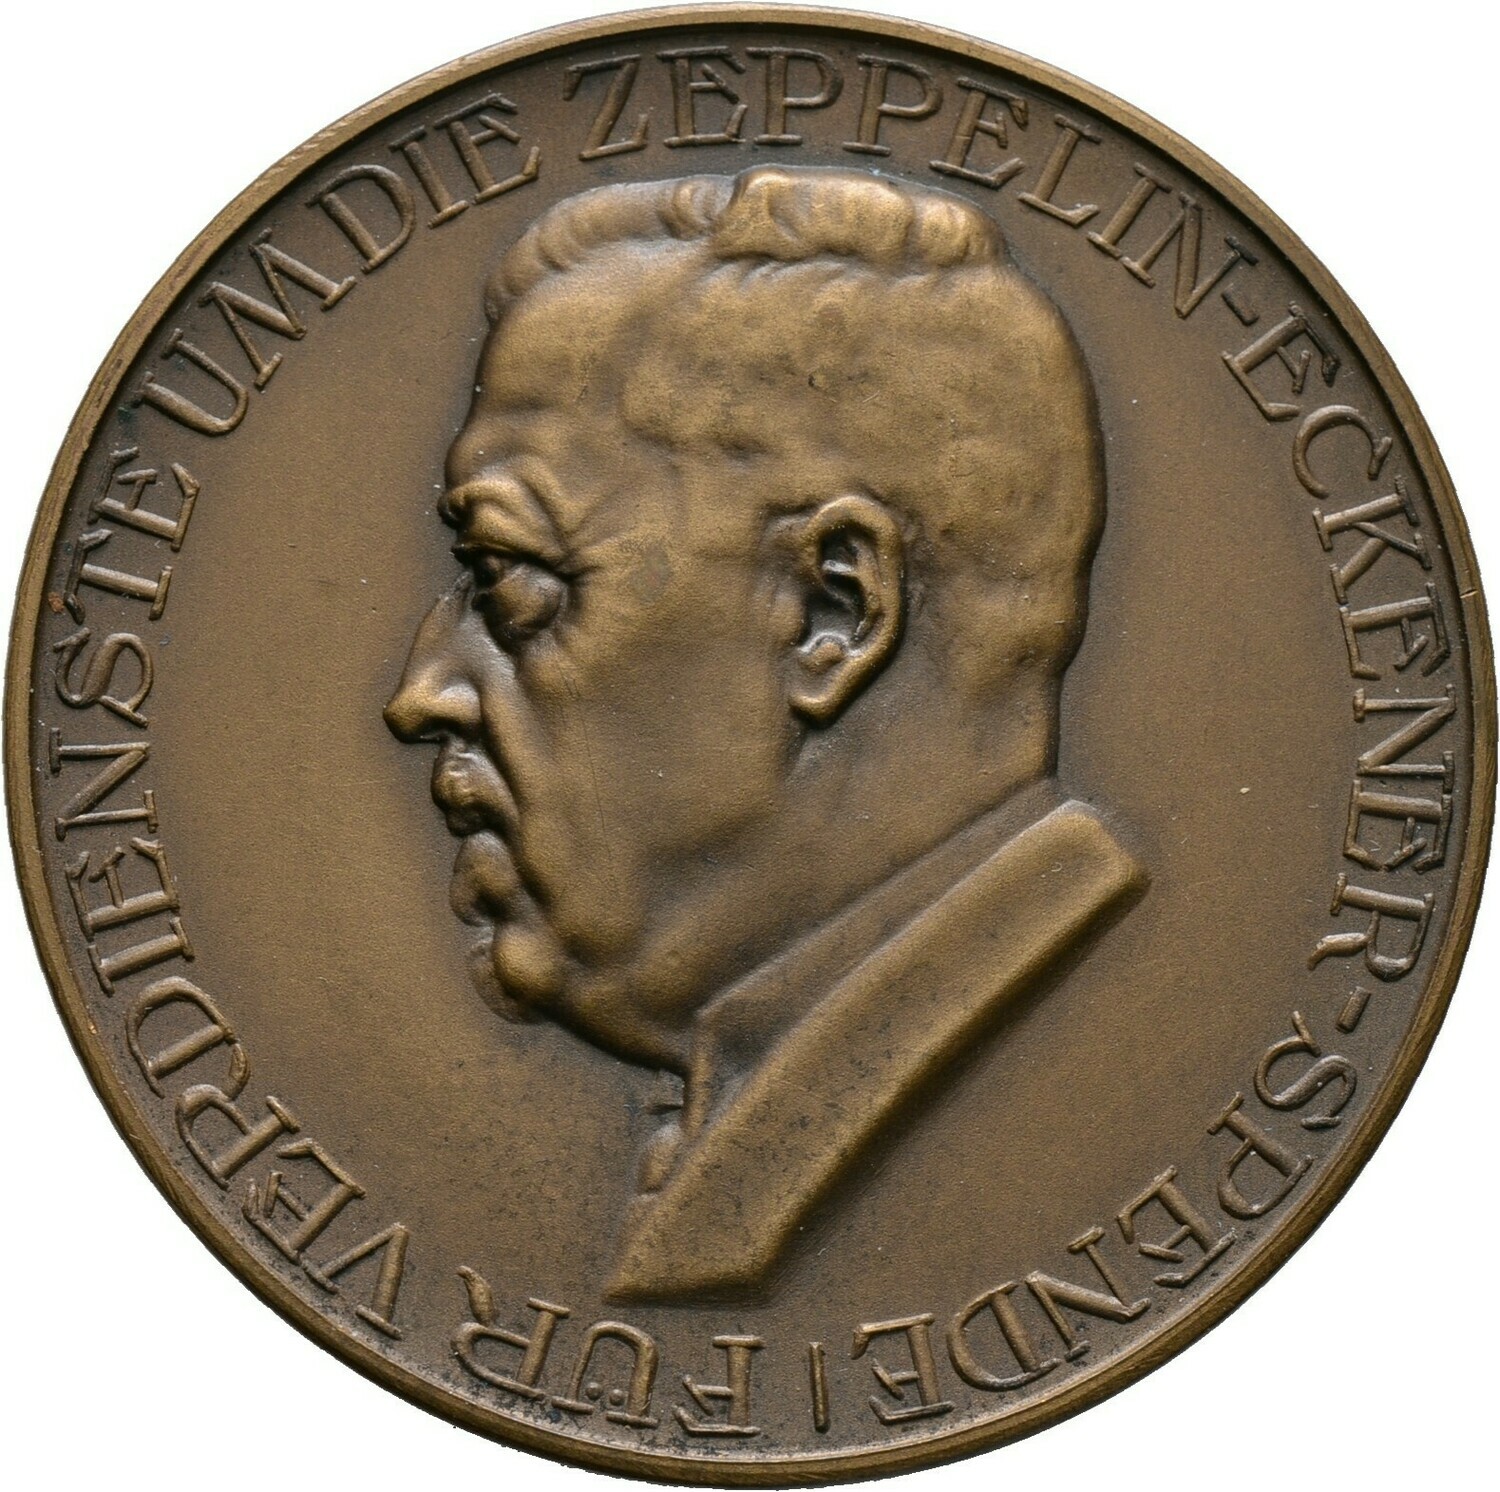 Bronzene Prämienmedaille o.J. (1924) von D. Fahrner, ​Luftfahrt​